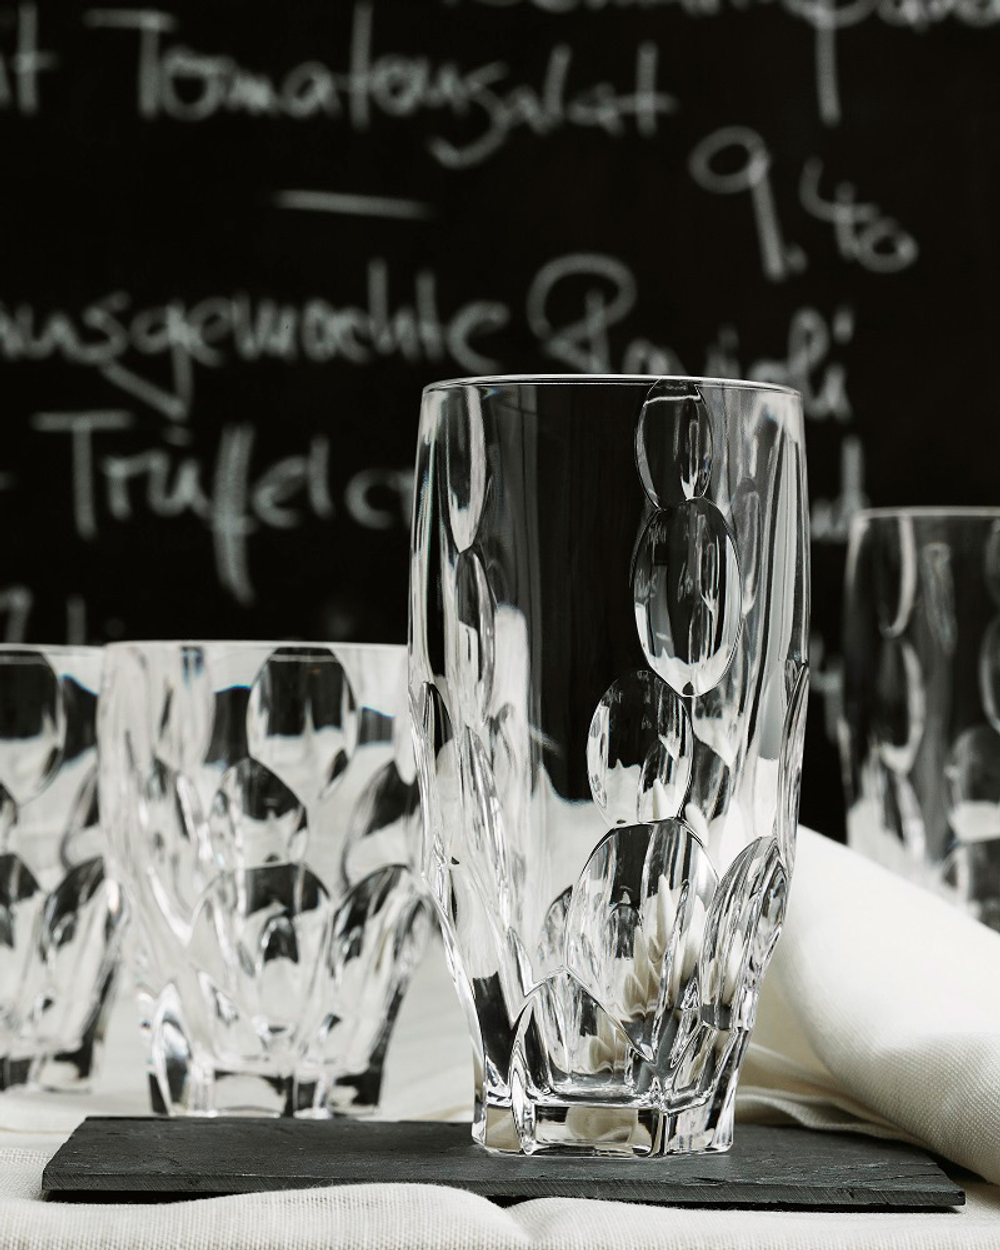 Набор хрустальных стаканов высоких, 4 шт, 385 мл, Sphere, Nachtmann (Германия)